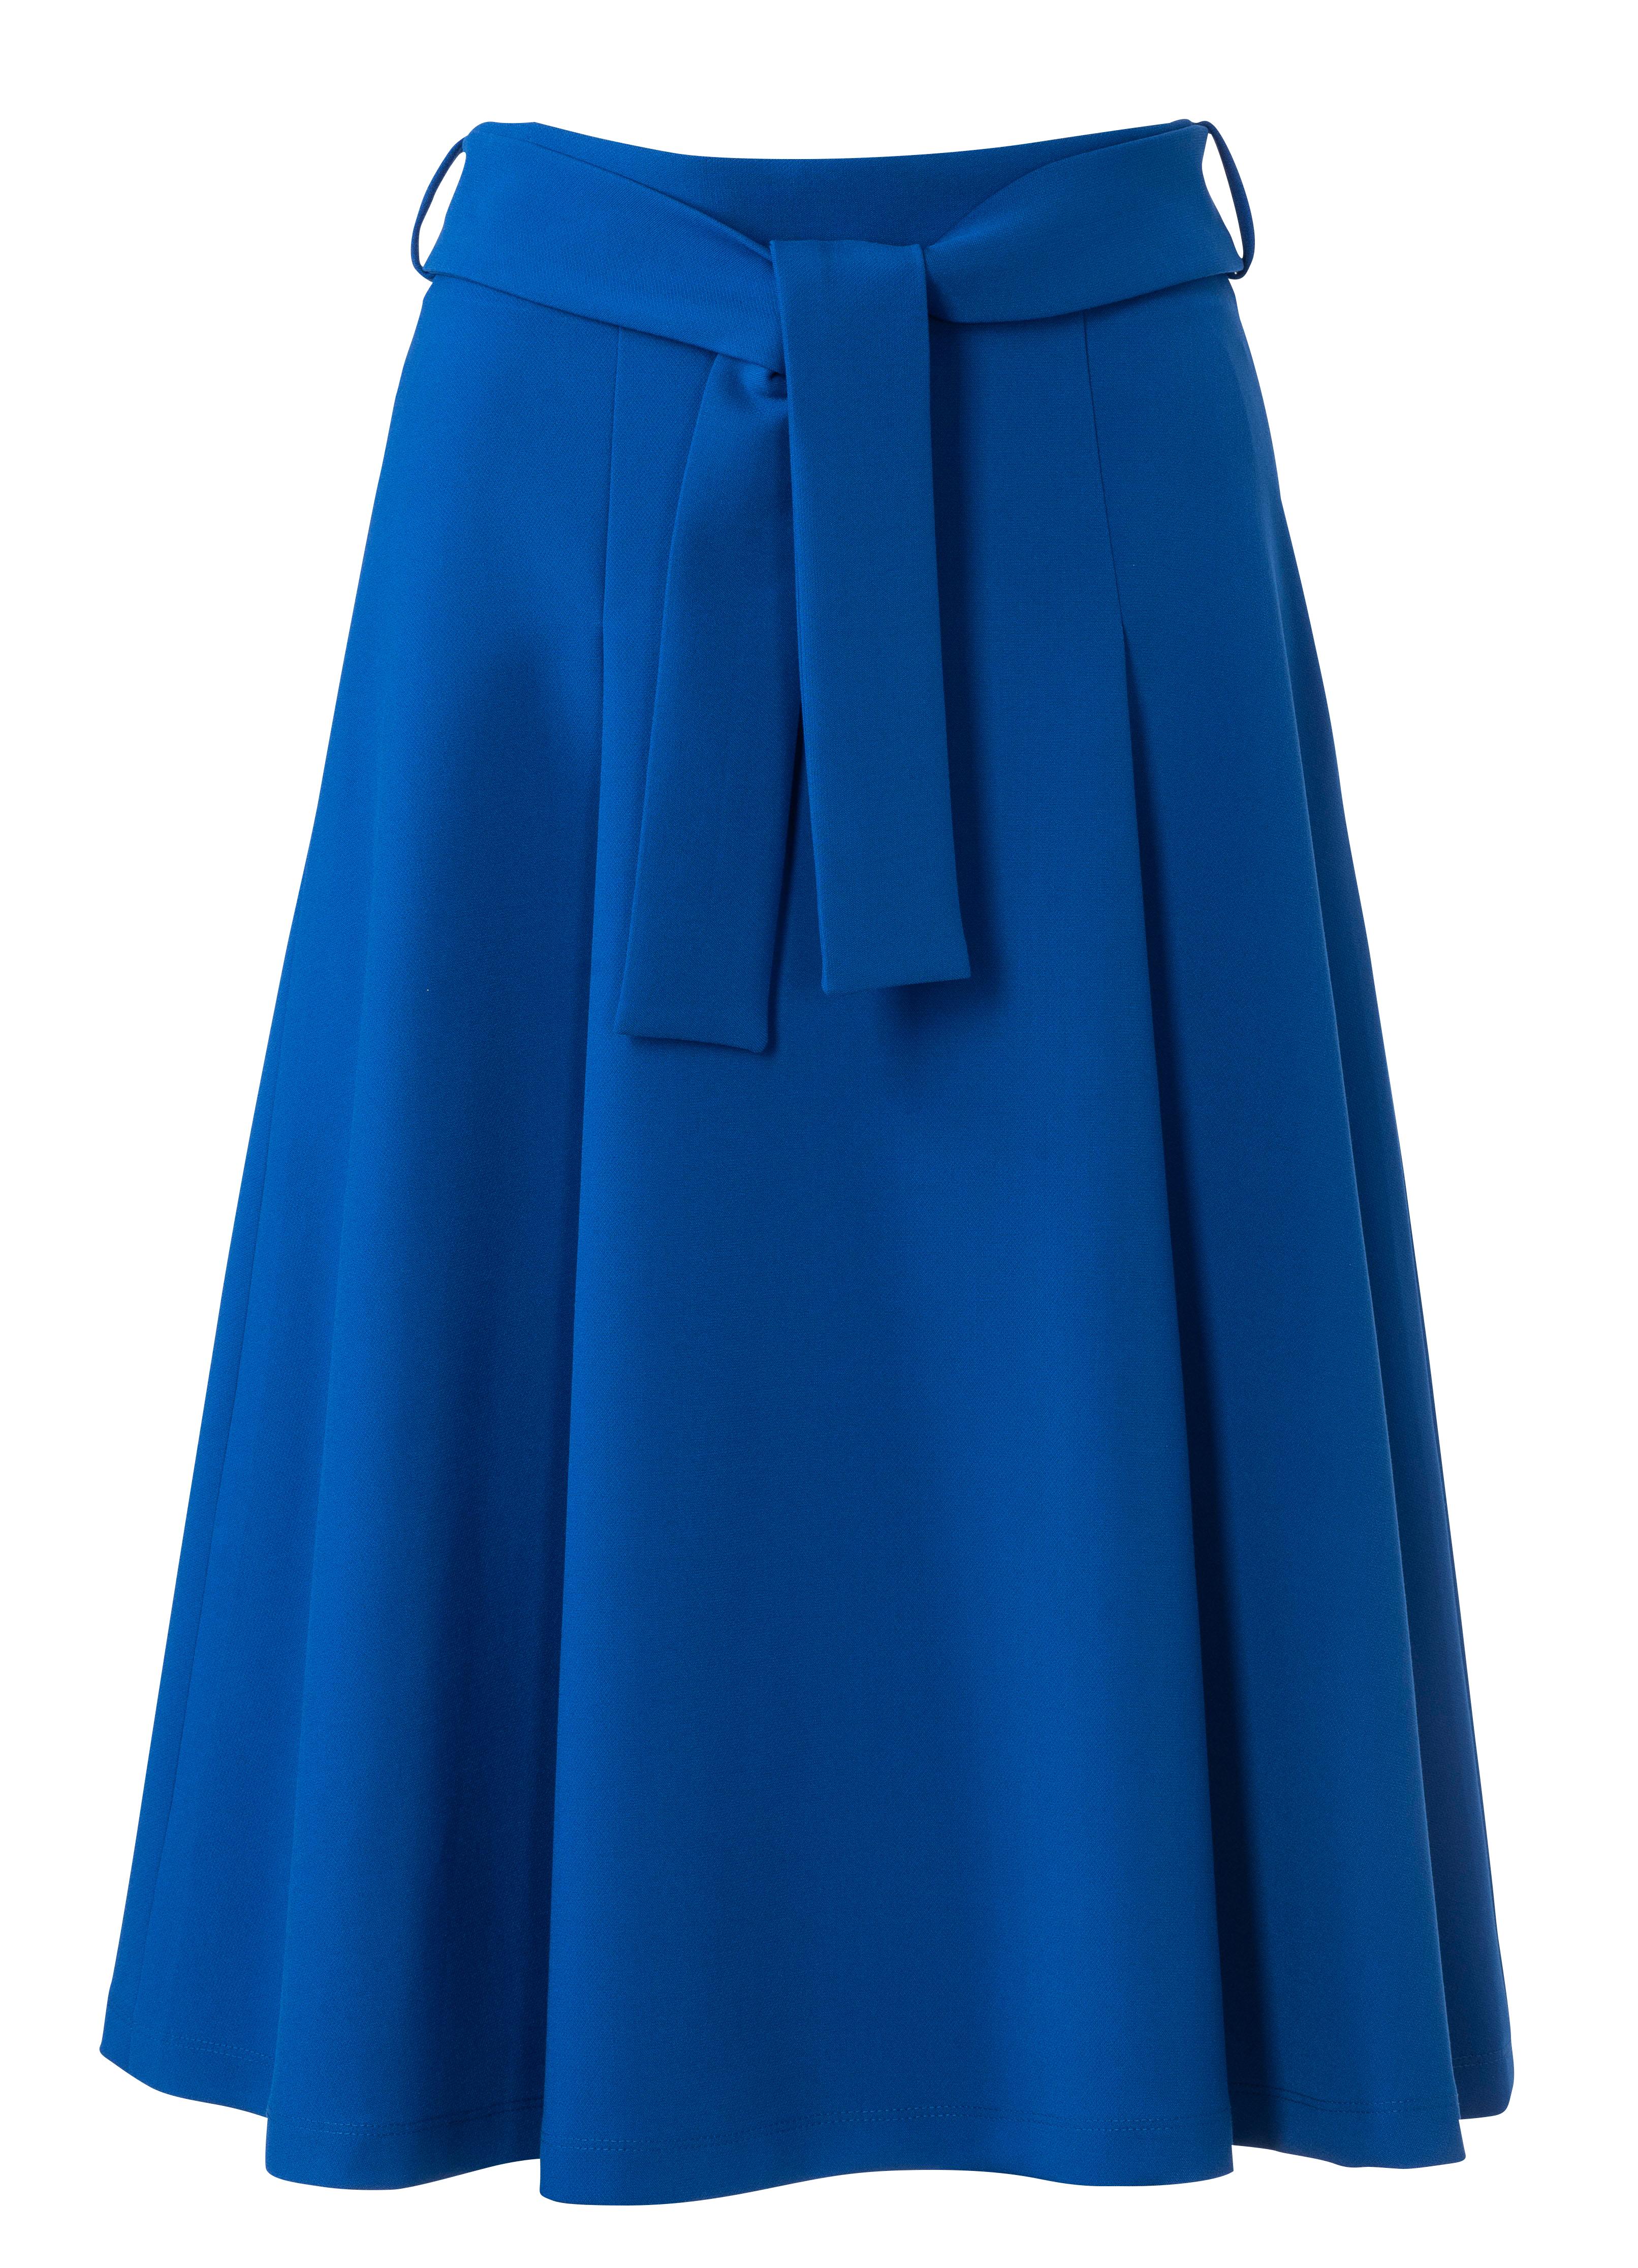 Burda B6247 Skirt with Pleats Sewing Pattern